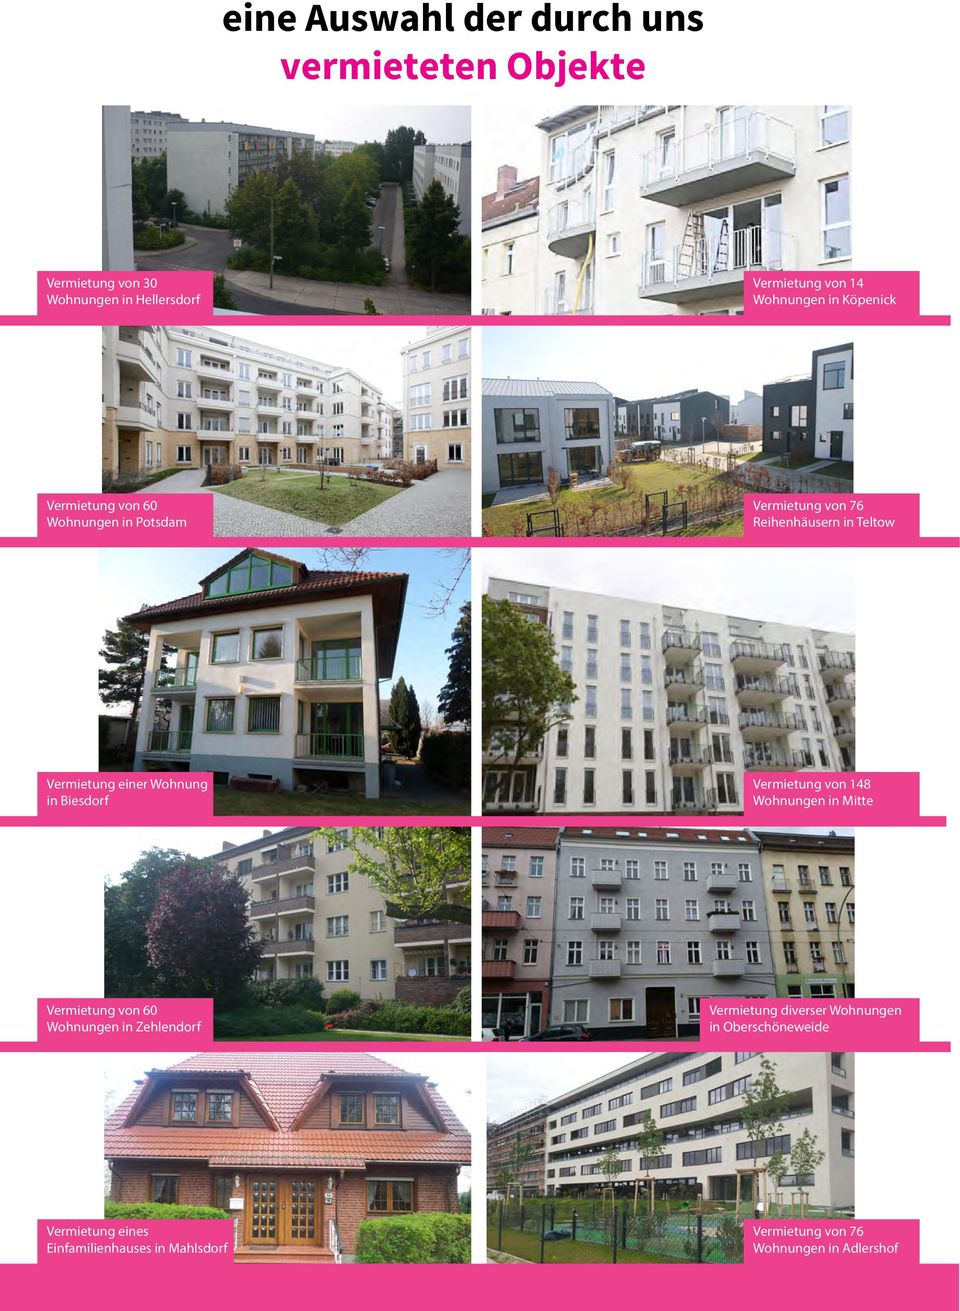 einer Wohnung in Biesdorf Vermietung von 148 Wohnungen in Mitte Vermietung von 60 Wohnungen in Zehlendorf Vermietung